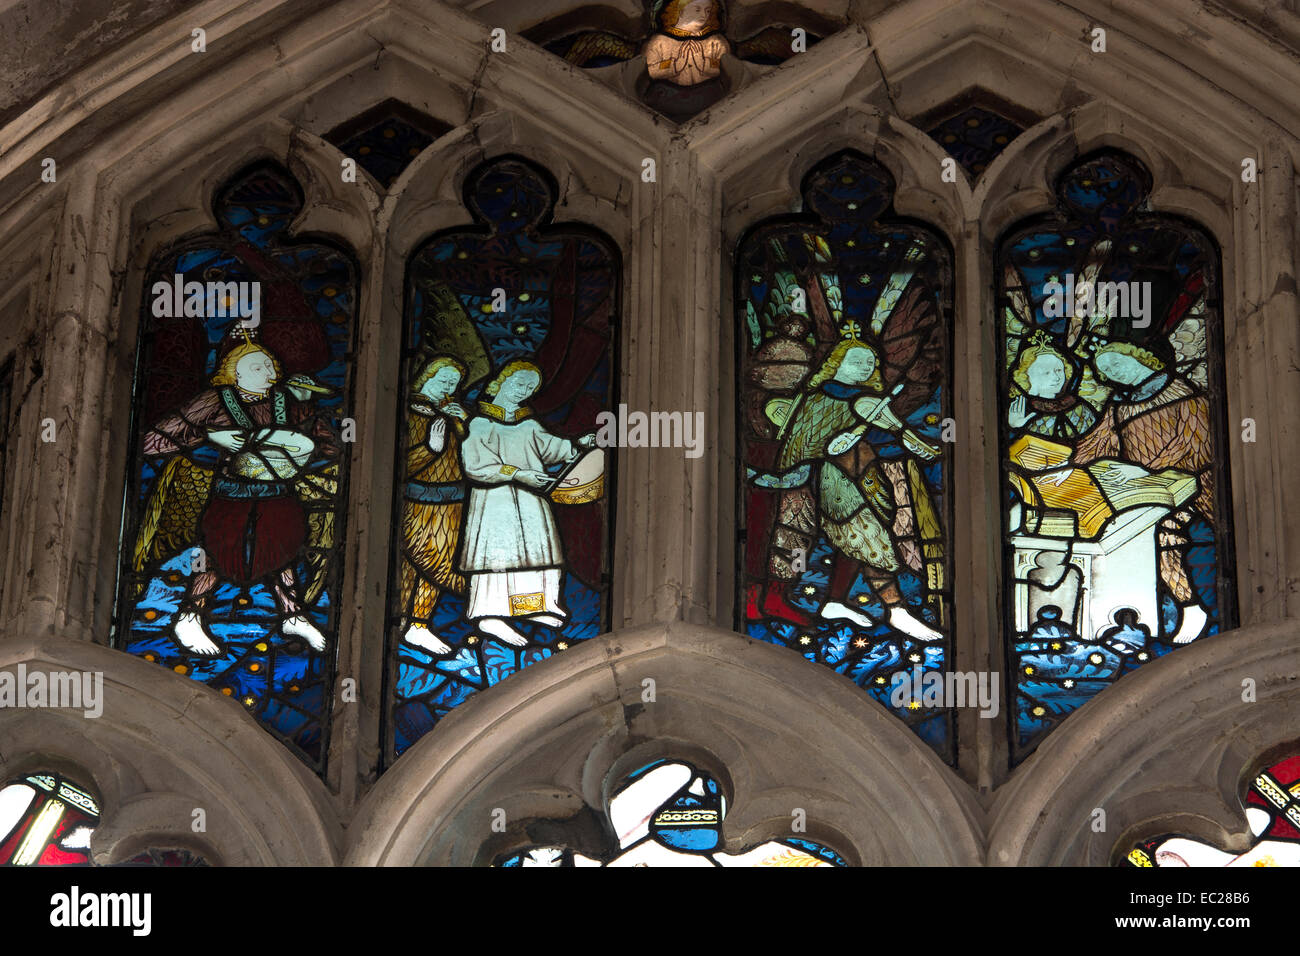 Musiciens médiévale vitrail dans la chapelle Beauchamp, Eglise St Mary, Warwick, Warwickshire, England, UK Banque D'Images